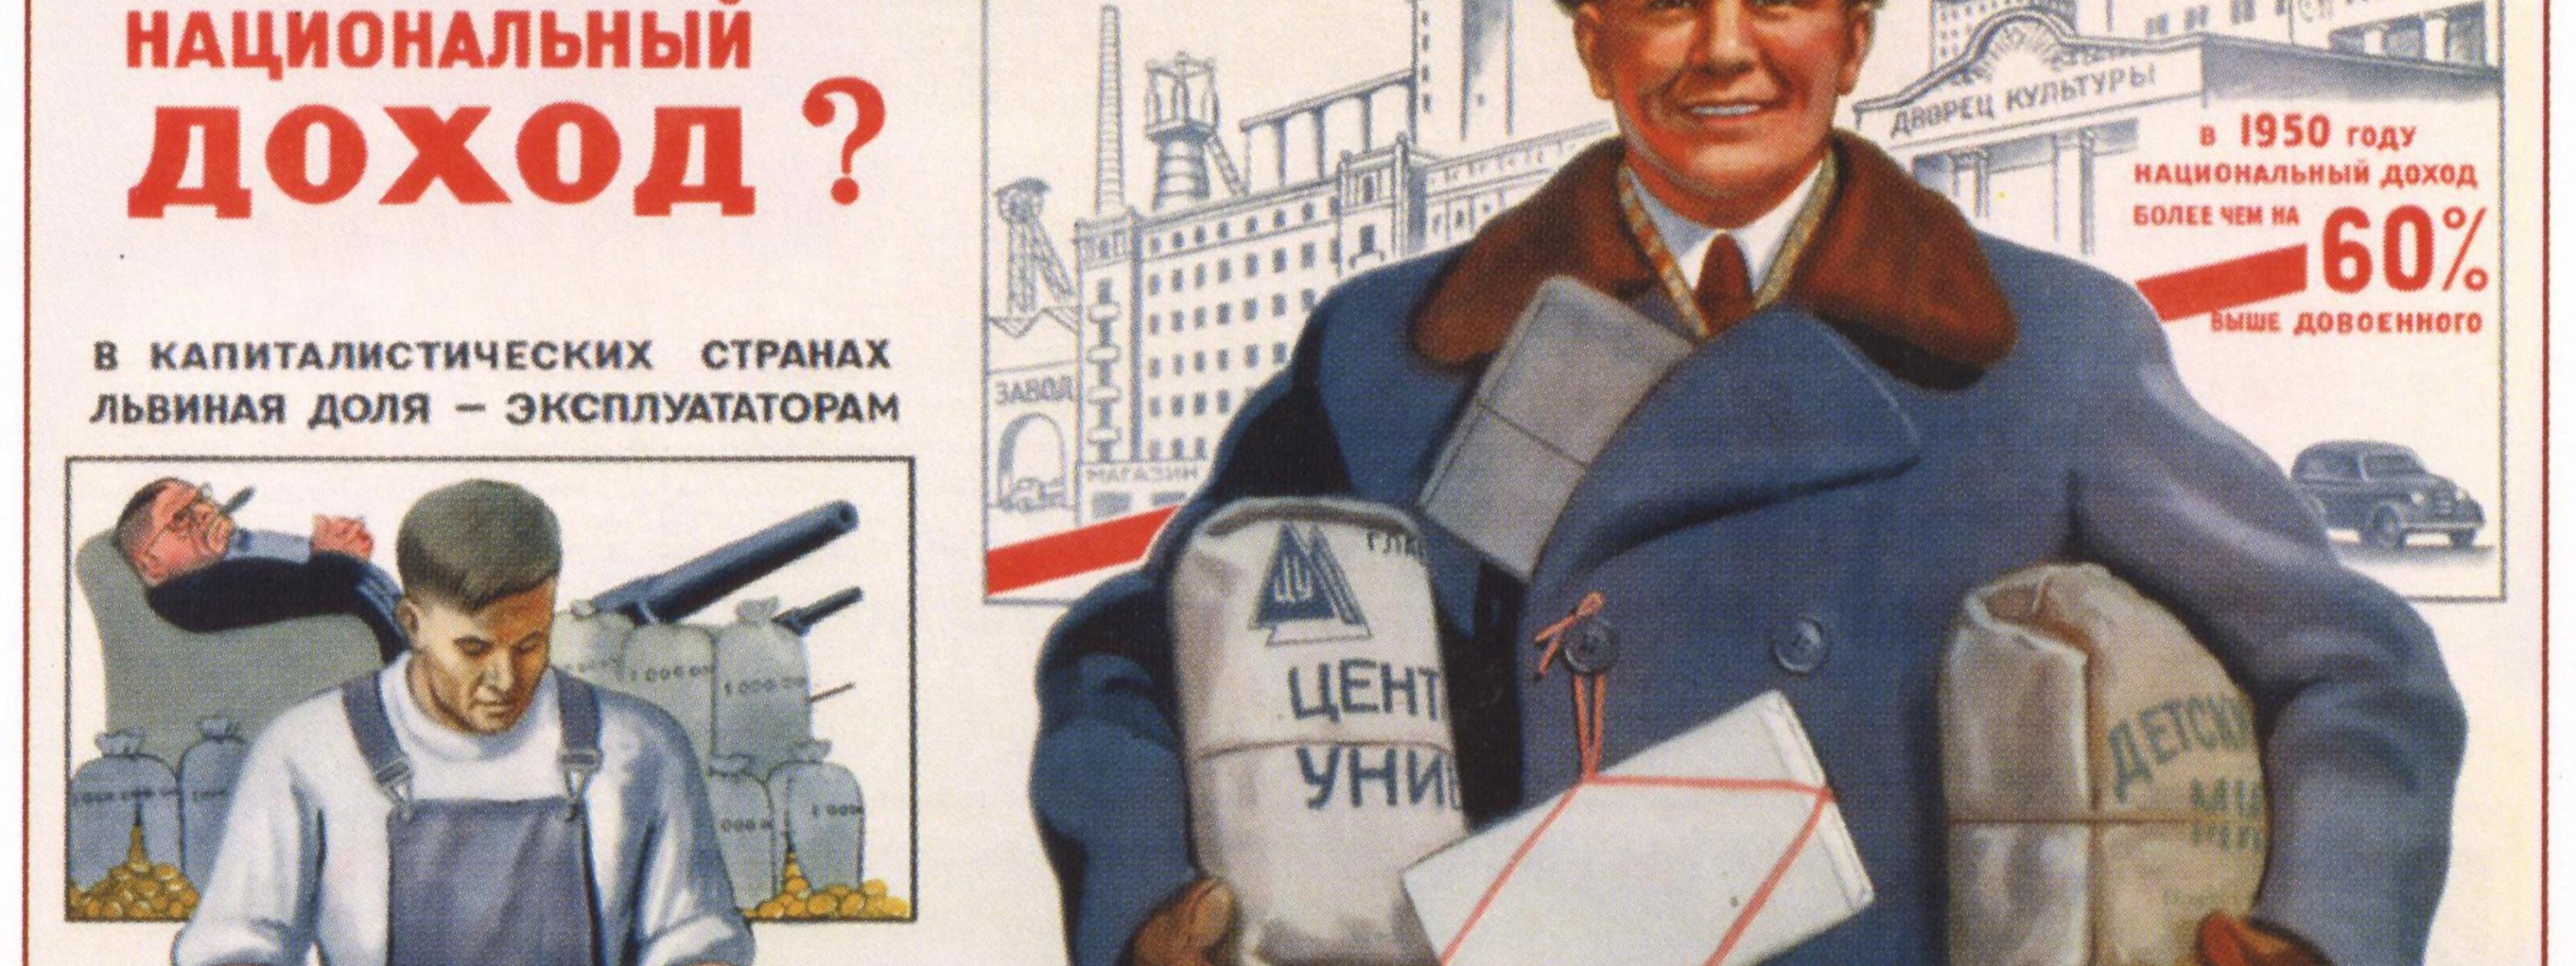 Экономика в советское время. Советские плакаты. Старые советские плакаты. Советские экономические плакаты. Советские плакаты про экономику.